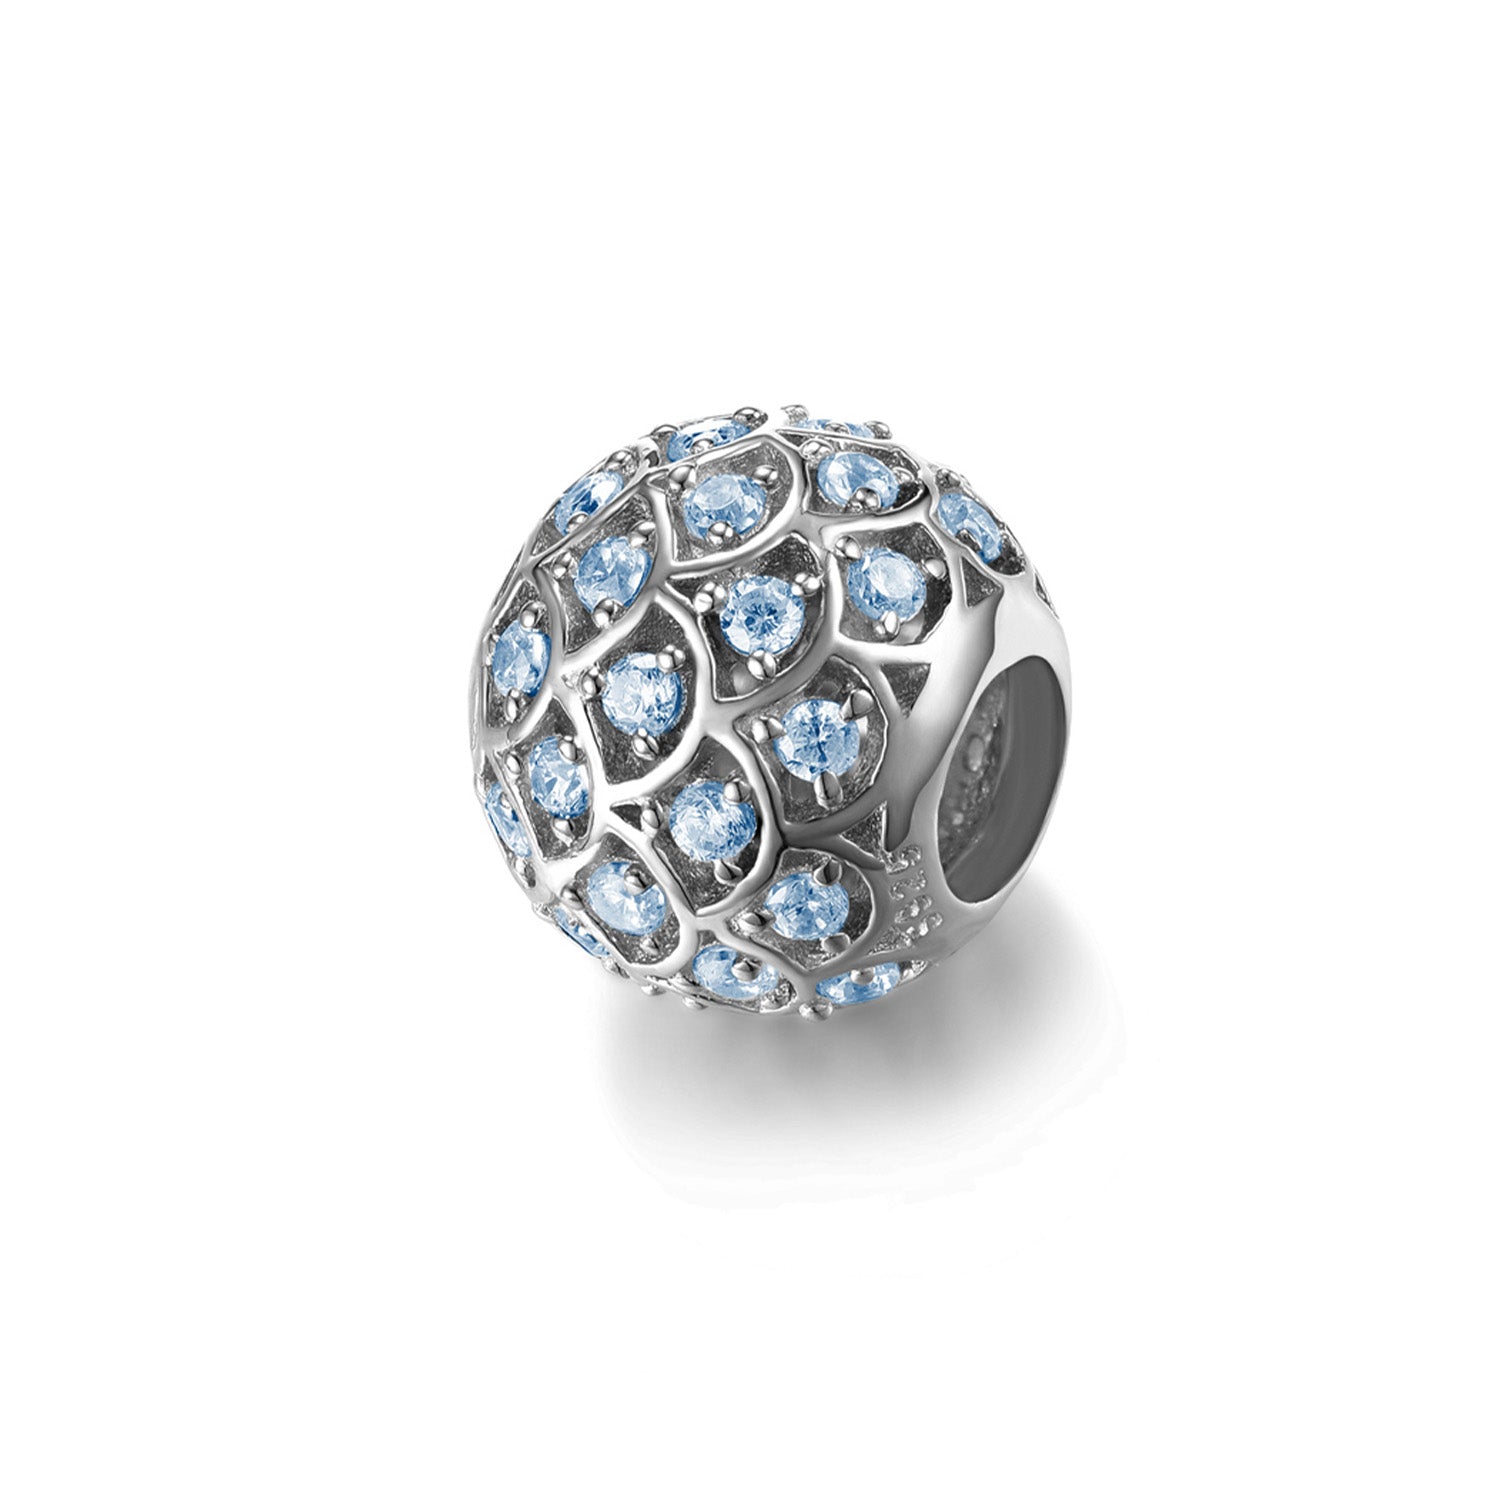 Jewdii 925 純銀時尚吊飾藍色方晶鋯石適合歐式串珠腕帶手鍊或項鍊